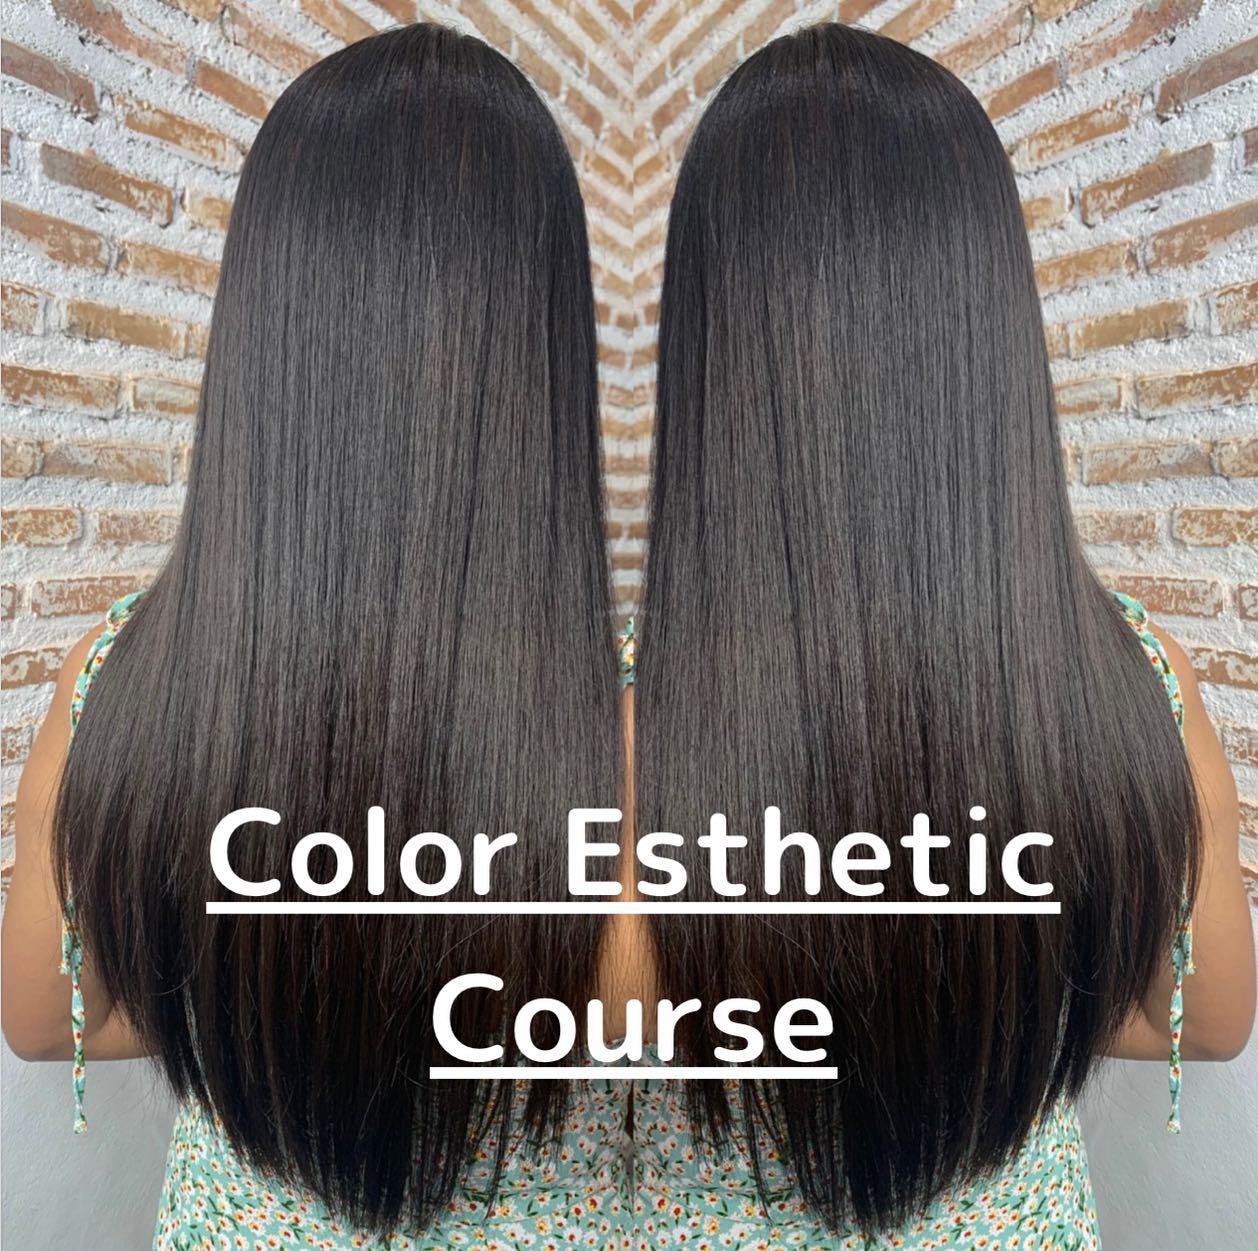 Color Esthetic  ถึงแม้จะเป็นรายการเกี่ยวกับการทำสีผม แต่ก็สามารถทำให้เส้นผมมีสุขภาพที่ดีขึ้นได้🤫  เมนูCuu's hair เป็นเมนูยอดนิยม จำเป็นต้องจำกัดสิทธิ์ในการจองคิว แนะนำให้ทุกท่านรีบติดต่อทางเราเพื่อสำรองคิวไว้ล่วงหน้า
สำหรับเมนูนี้เป็นการทำสีพร้อมกับการดูแลเส้นผมด้วยการเติมสารอาหารจำนวนมาก เช่น เคราติน คอลลาเจน กรดอะมิโน กรดไฮยาลูโรนิก เซราไมด์ ฯลฯ 
ไม่ว่าจะเป็นพื้นผมธรรมดา หรือพื้นผมที่ผ่านการฟอก ผมจะดูเงางามขึ้น เนื่องจากเส้นผมได้รับการบำรุงดูแลจากภายใน ไม่ว่าจะมีสภาพเส้นผมอย่างไรผมจะดีขึ้นได้อย่างแน่นอน  แนะนำ!! เหมาะสำหรับผู้ที่ต้องการทำสีผมแต่ไม่ต้องการให้เส้นผมหรือหนังศรีษะถูกทำลายหรือได้รับความเสียหาย   อยากให้ทุกท่านได้สัมผัสกับเมนูทำผมอย่างเต็มรูปแบบที่สัมผัสได้ที่ CUU’s hair ที่เดียวเท่านั้น ‍♀️  カラーエステは…  ヘアカラーメニューなのに髪の毛が良くなります🤫  クーズヘアの人気メニュー、予約に制限を設けているのでご予約はお早めに！
ケラチン、コラーゲン、アミノ酸、スーパーヒアルロン酸、セラミドなどなどここでは伝えきれない程の栄養をたくさん入れながらカラーの施術しています。普通の髪はもちろん、ブリーチ毛でも、とても艶が出て、髪の内部から栄養補給されてどんな髪でも本来の状態が必ず良くなります！
カラーしたいけど、髪や頭皮を傷ませたくない方におすすめです！  クーズヘアのオリジナル、髪エステ是非体験してください‍♀️  IG:cuushair
Facebook : Cuu's​ hair
TEL : 02-065-0909
#bangkok #thonglor #bangkokhairsalon #ผม #เกาหลี #ม้วนผมเกาหลี #ร้านเสริมสวย #ดัดผม #สไตล์เกาหลี #hairesthetic #organic